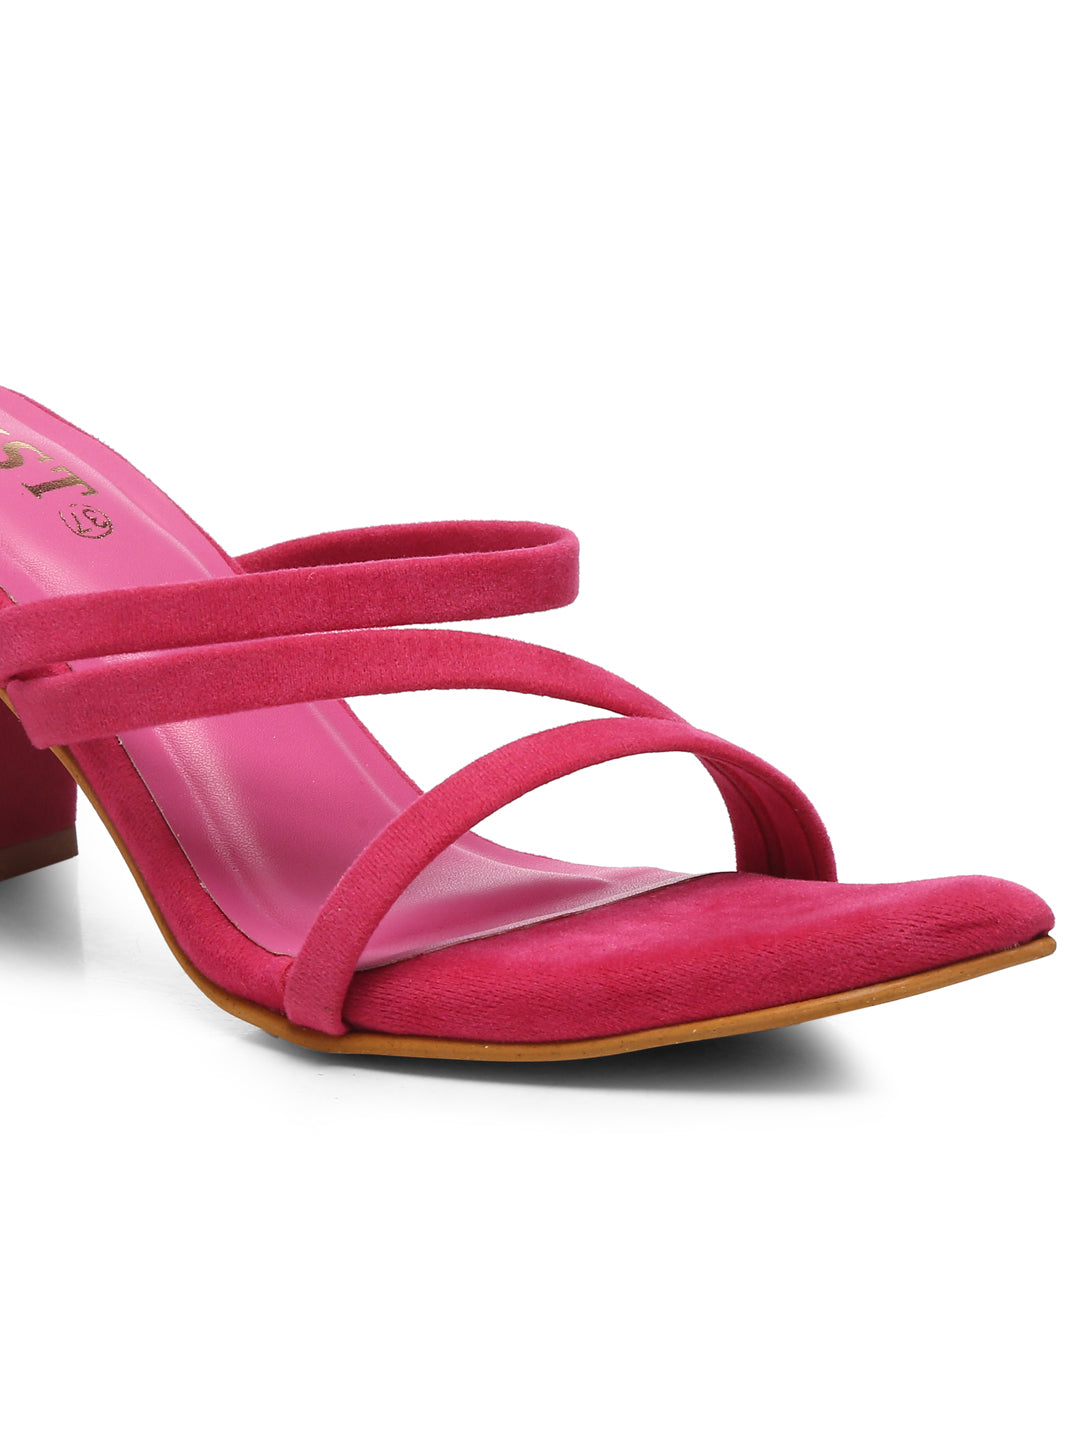 GNIST Super Pointed Hot Pink Stilettos Heels